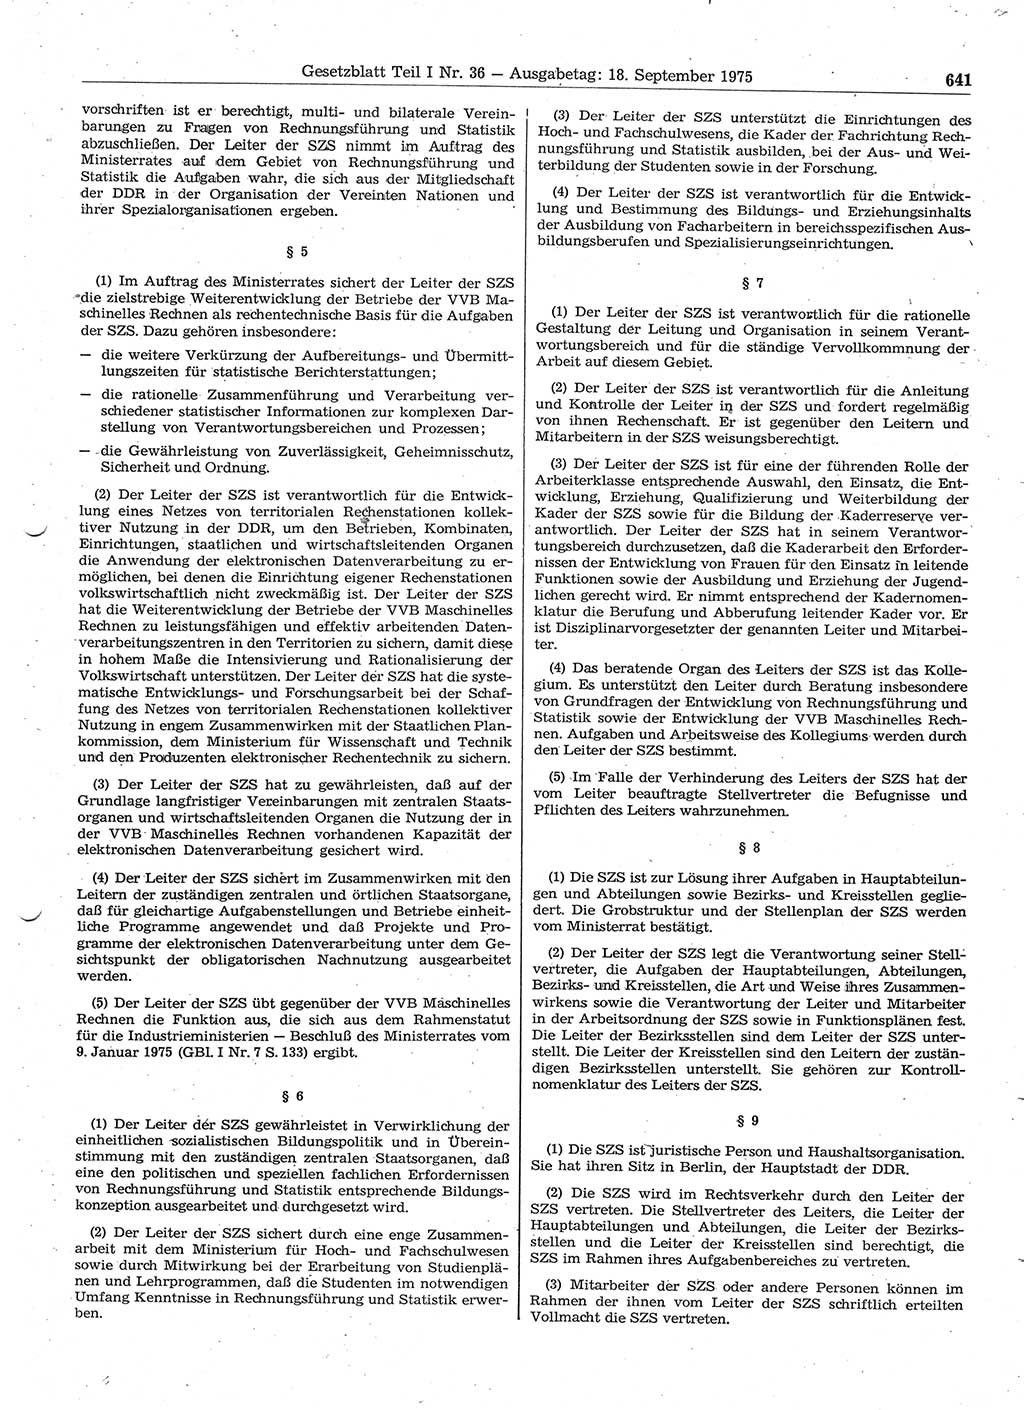 Gesetzblatt (GBl.) der Deutschen Demokratischen Republik (DDR) Teil Ⅰ 1975, Seite 641 (GBl. DDR Ⅰ 1975, S. 641)